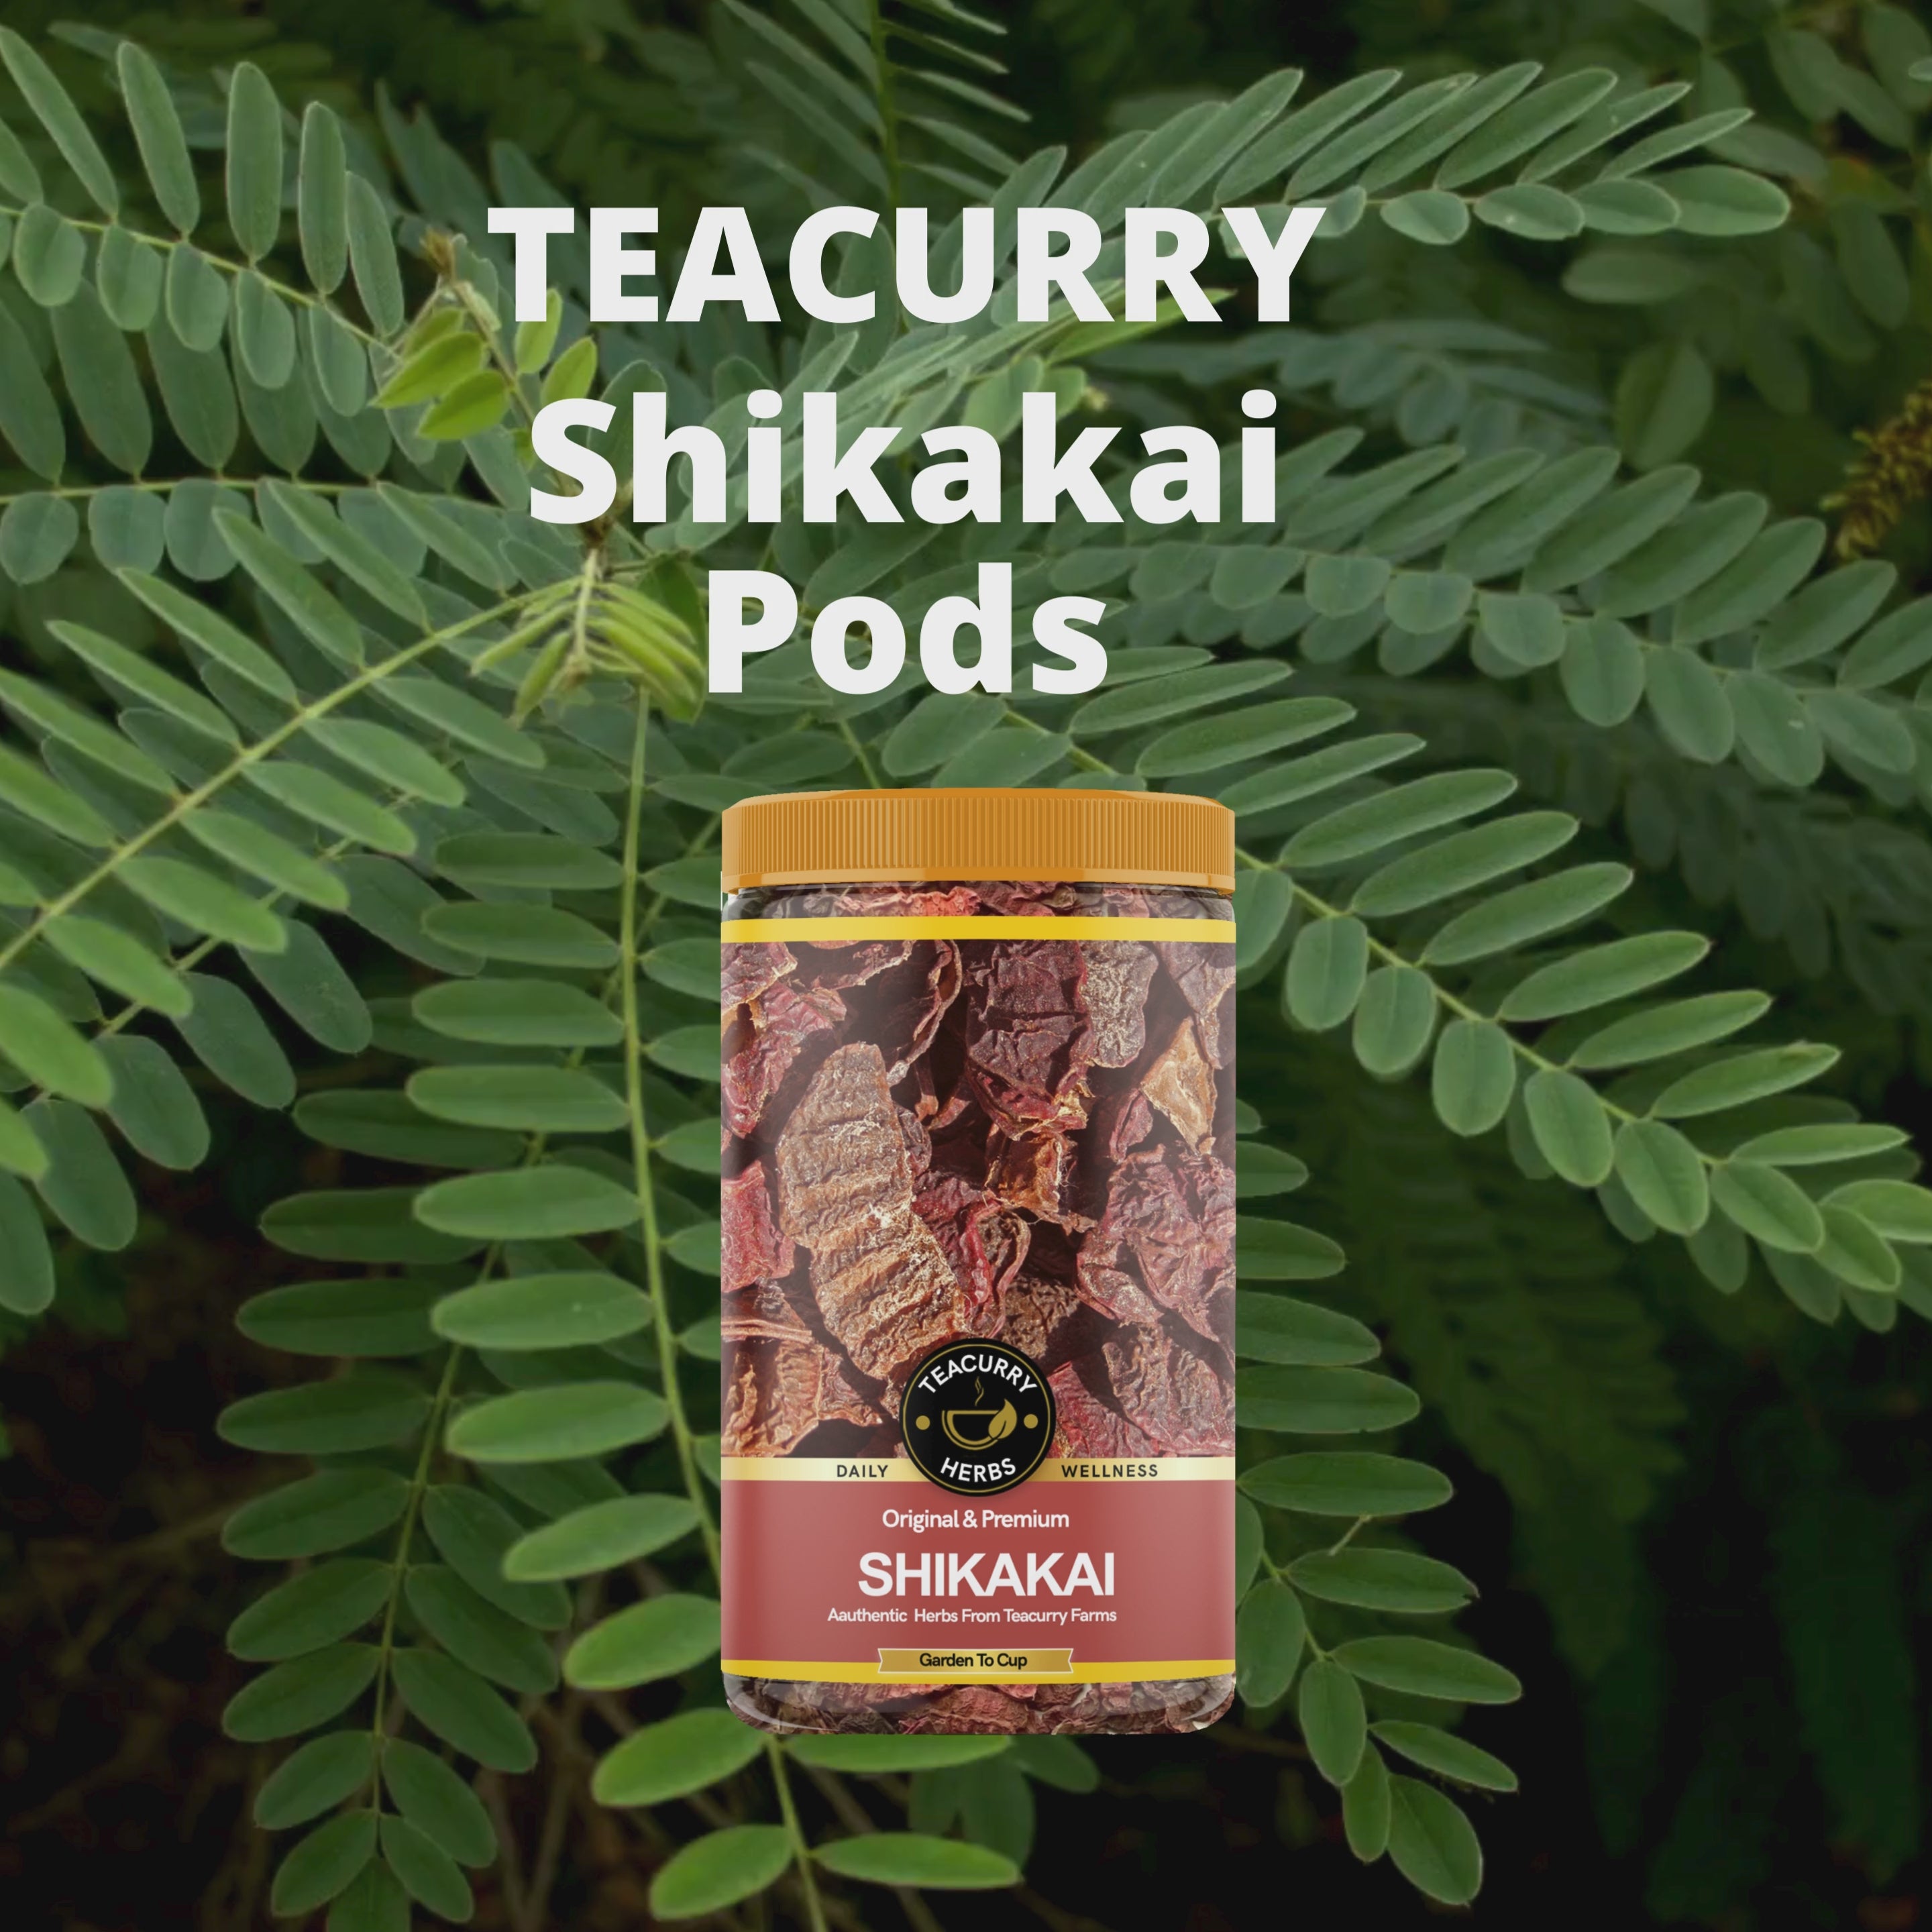 Teacurry Shikakai Pods Video